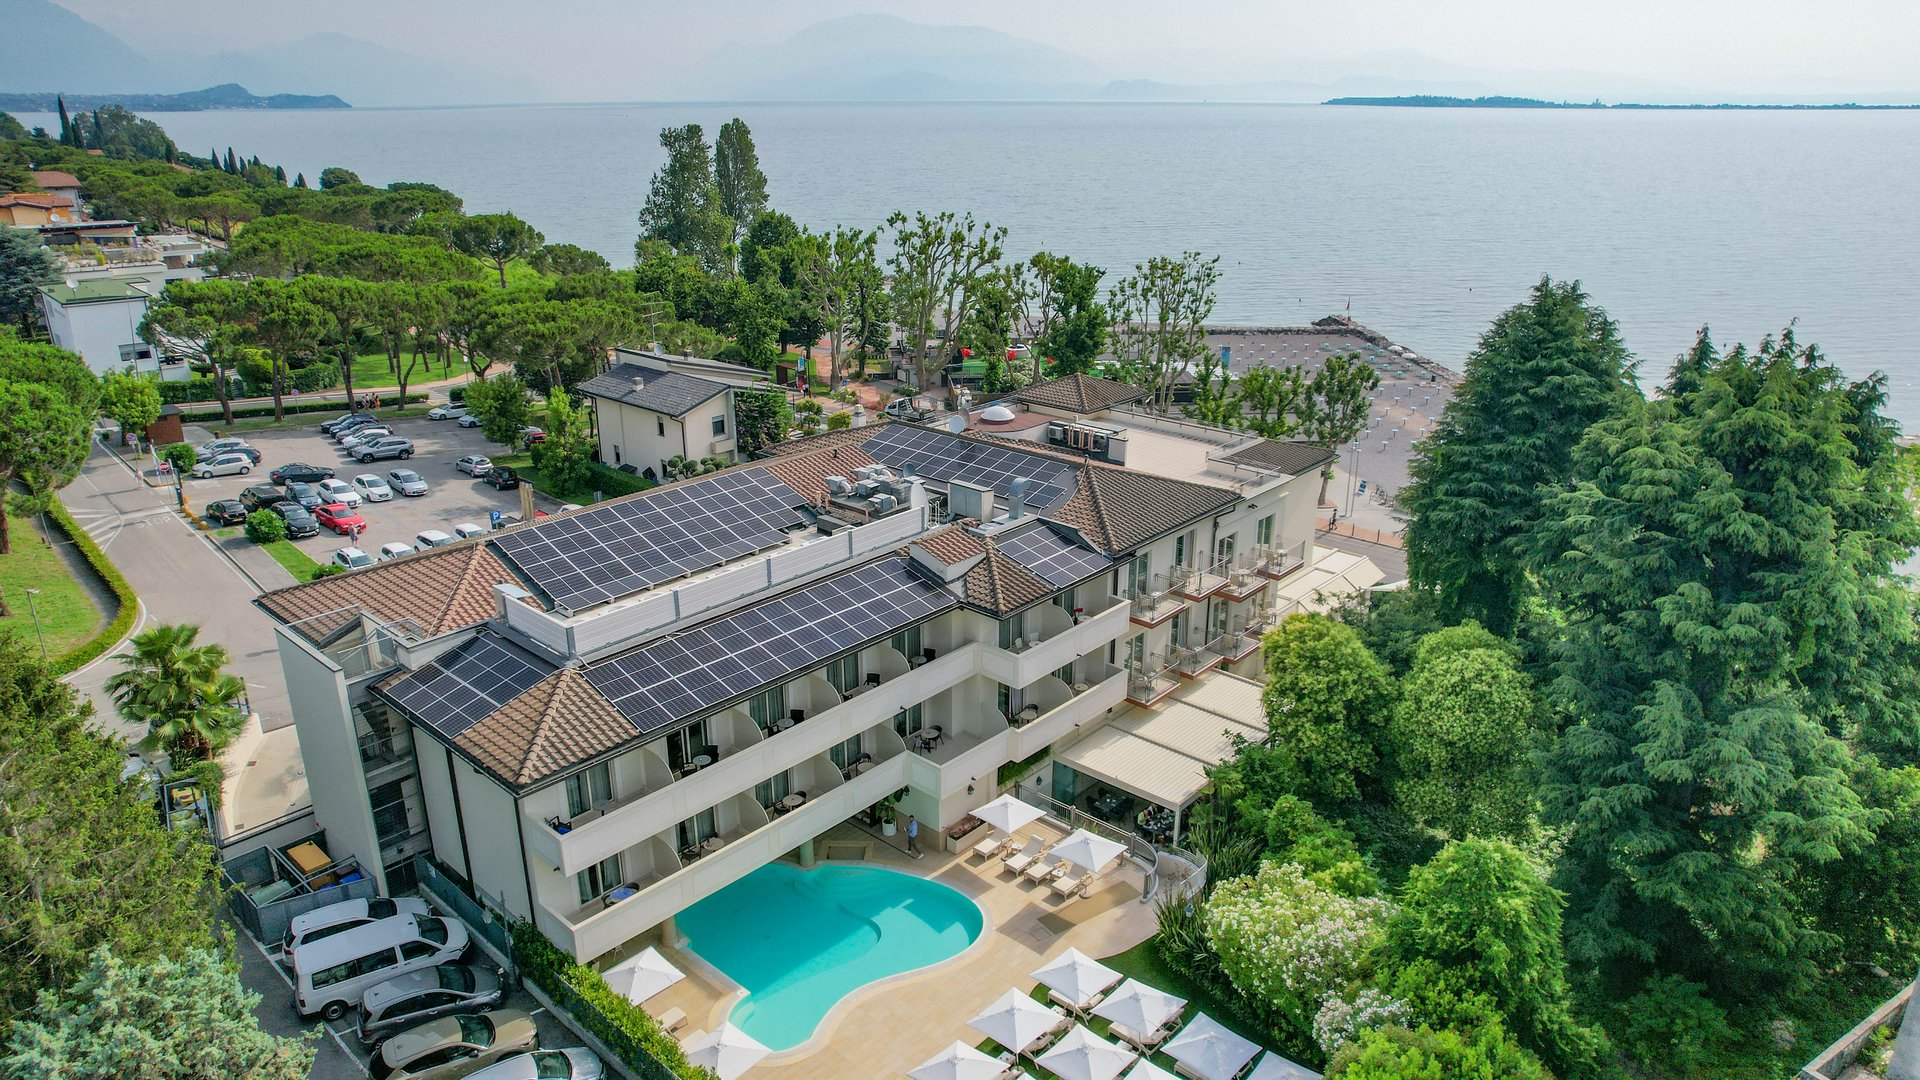 Hotel Villa Rosa, Gardasee: sicherer und sorgenfreier Urlaub